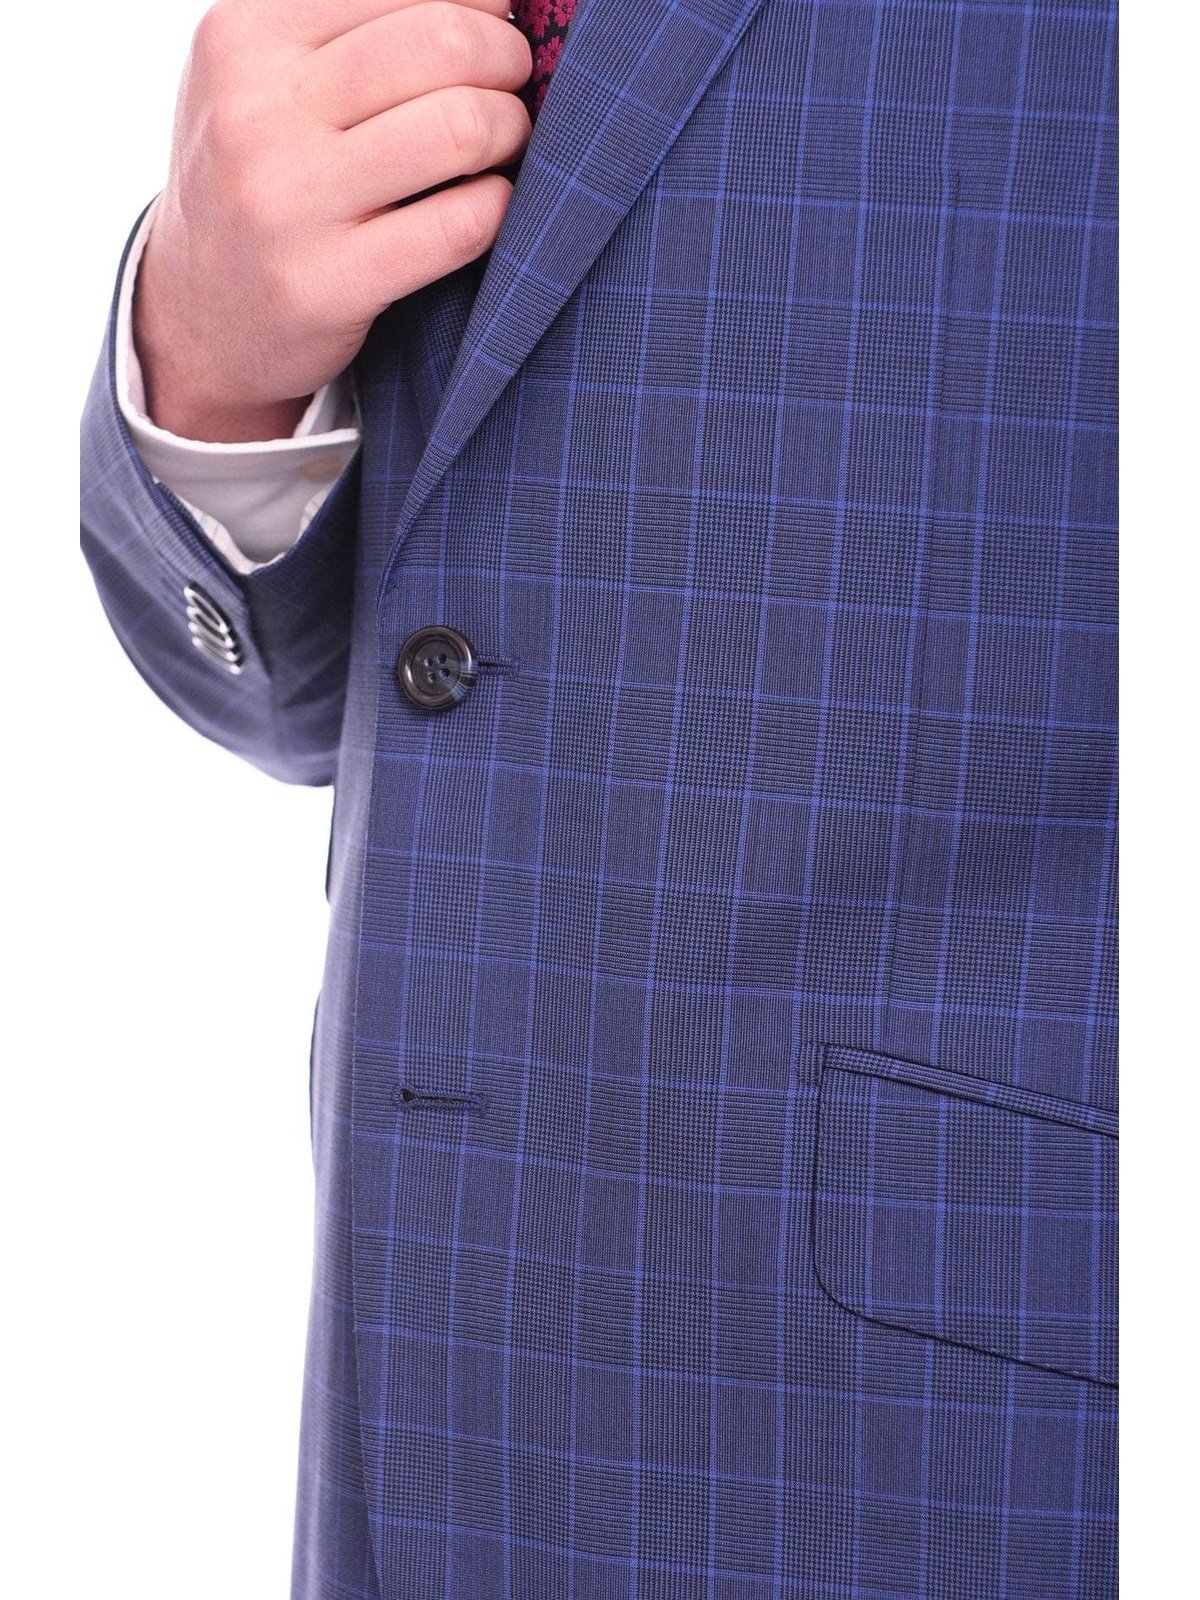 Napoli TWO PIECE SUITS Men's Napoli Slim Fit Blue Glen Plaid 2 Button Super 150s 100% Italian Wool Suit